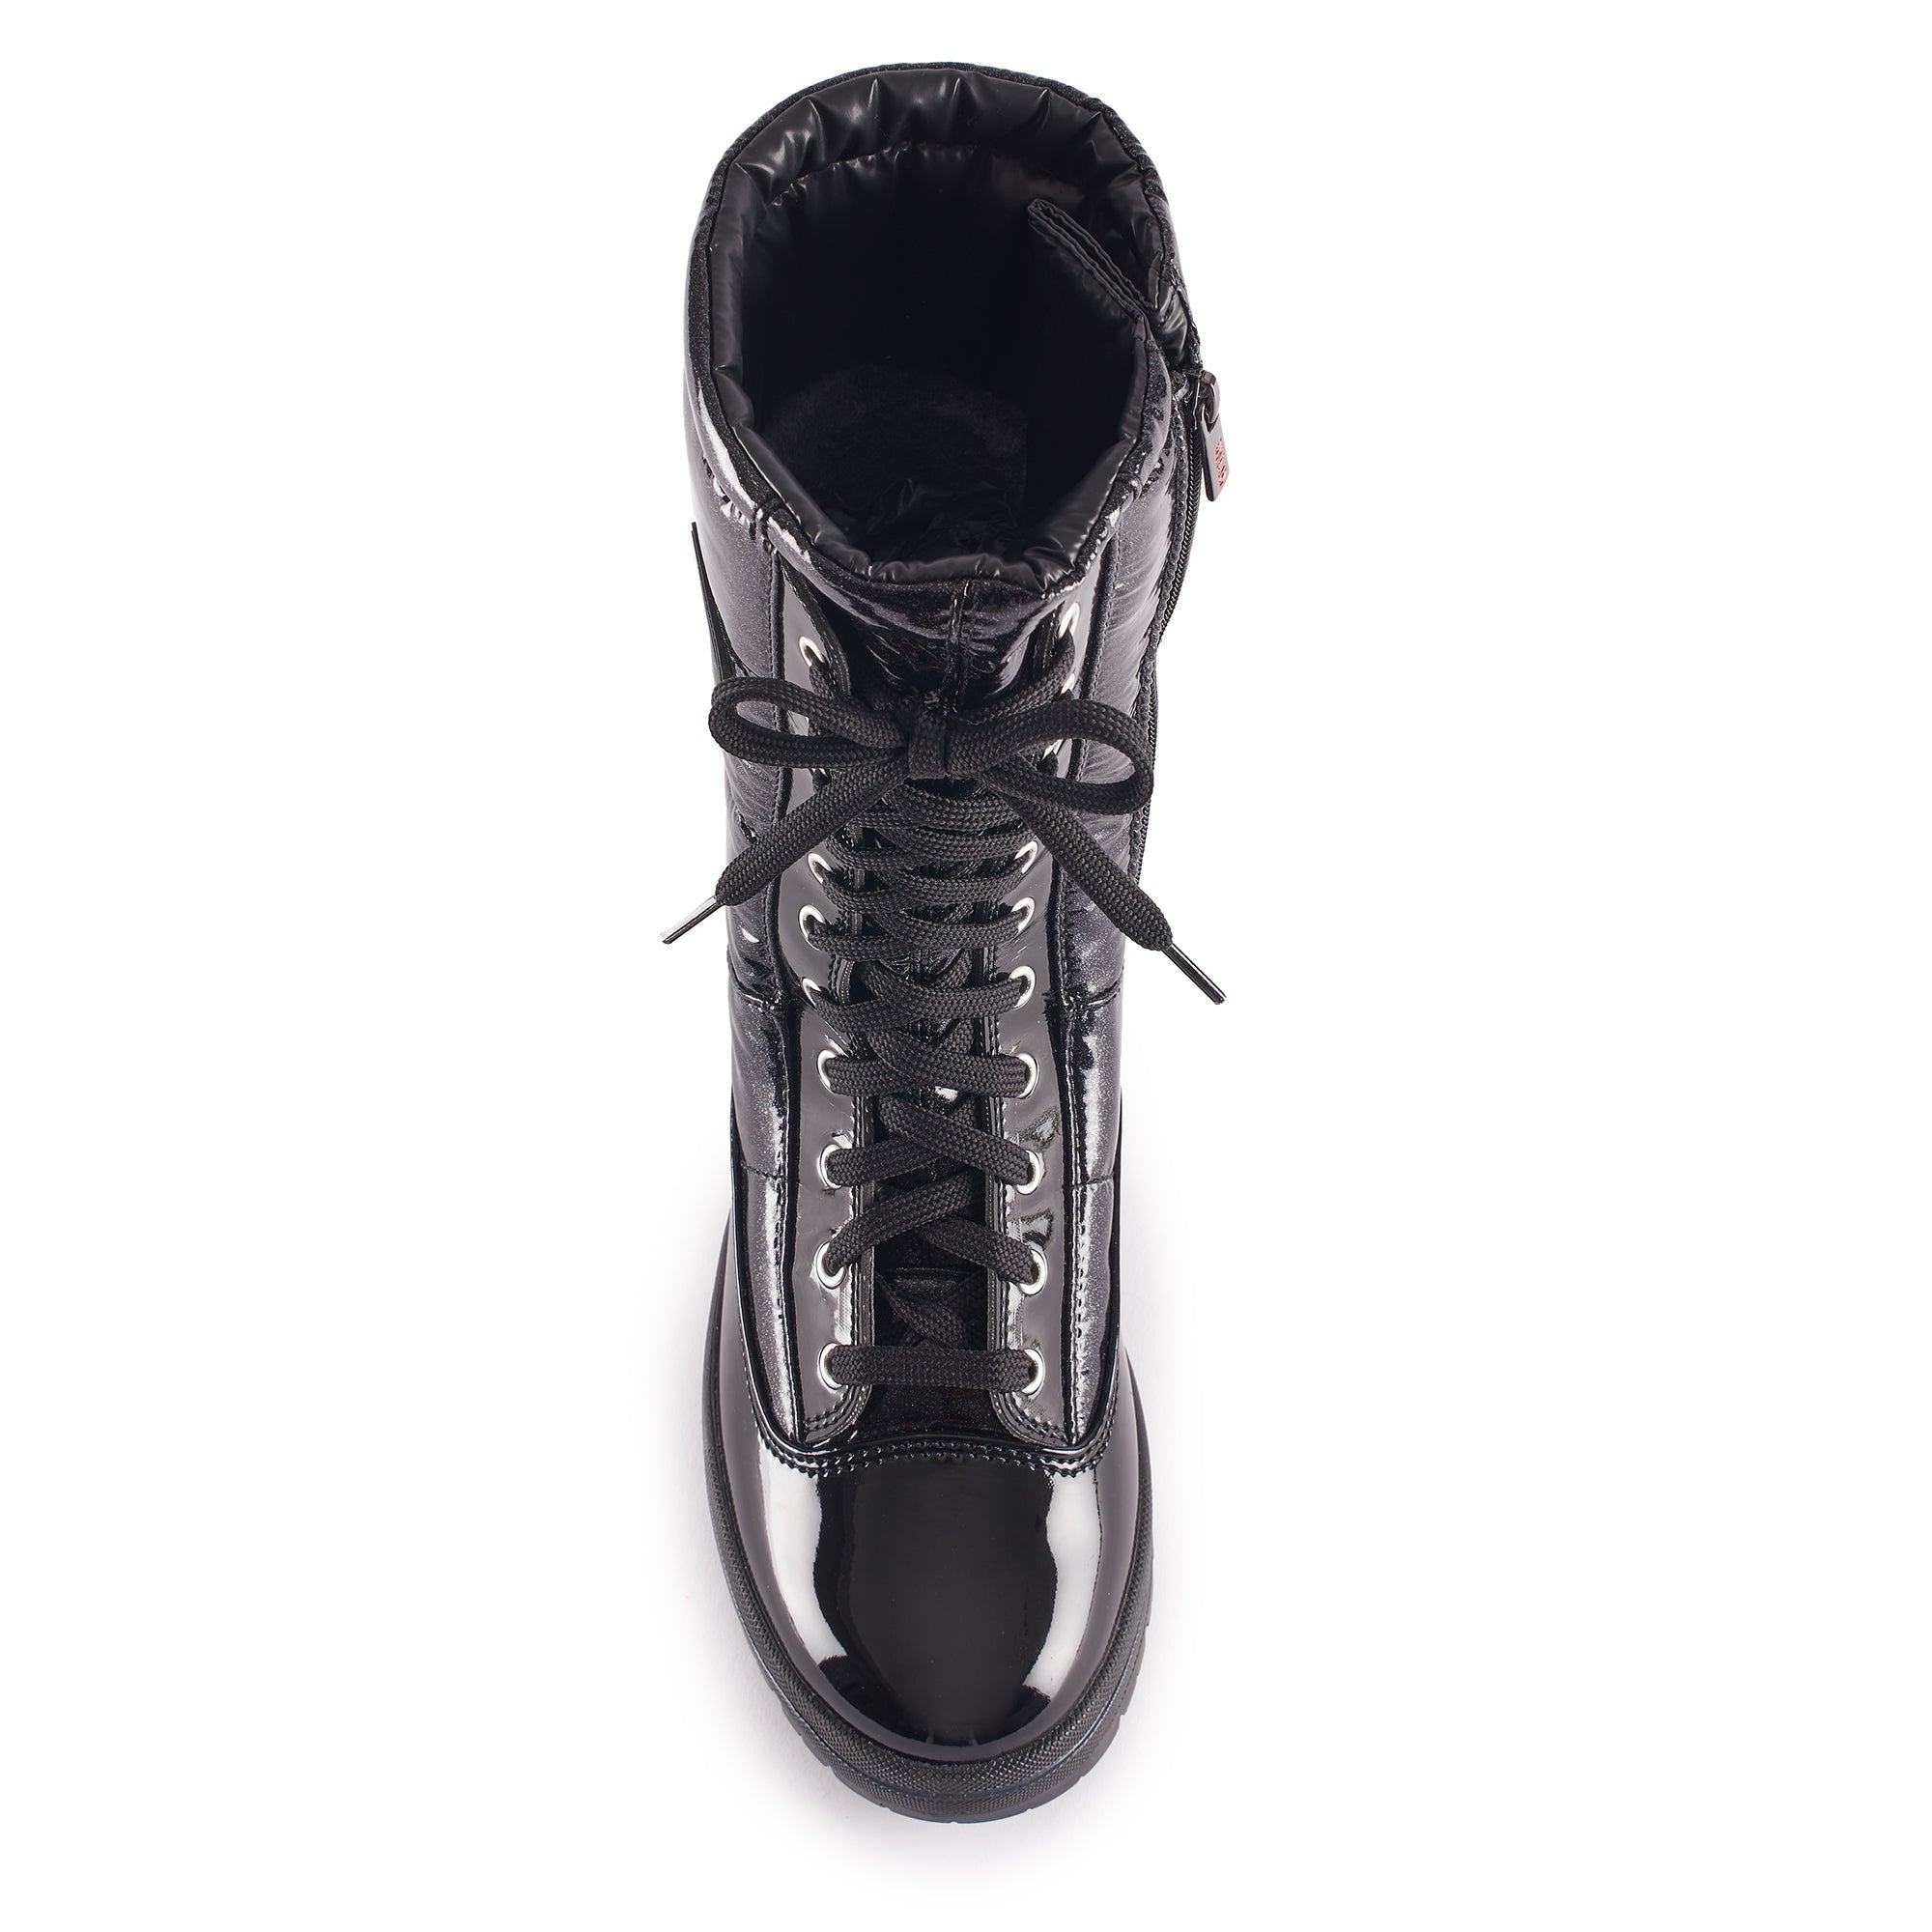 OLANG GLAMOUR - Women's winter boots - FINAL SALE - Boutique Bubbles